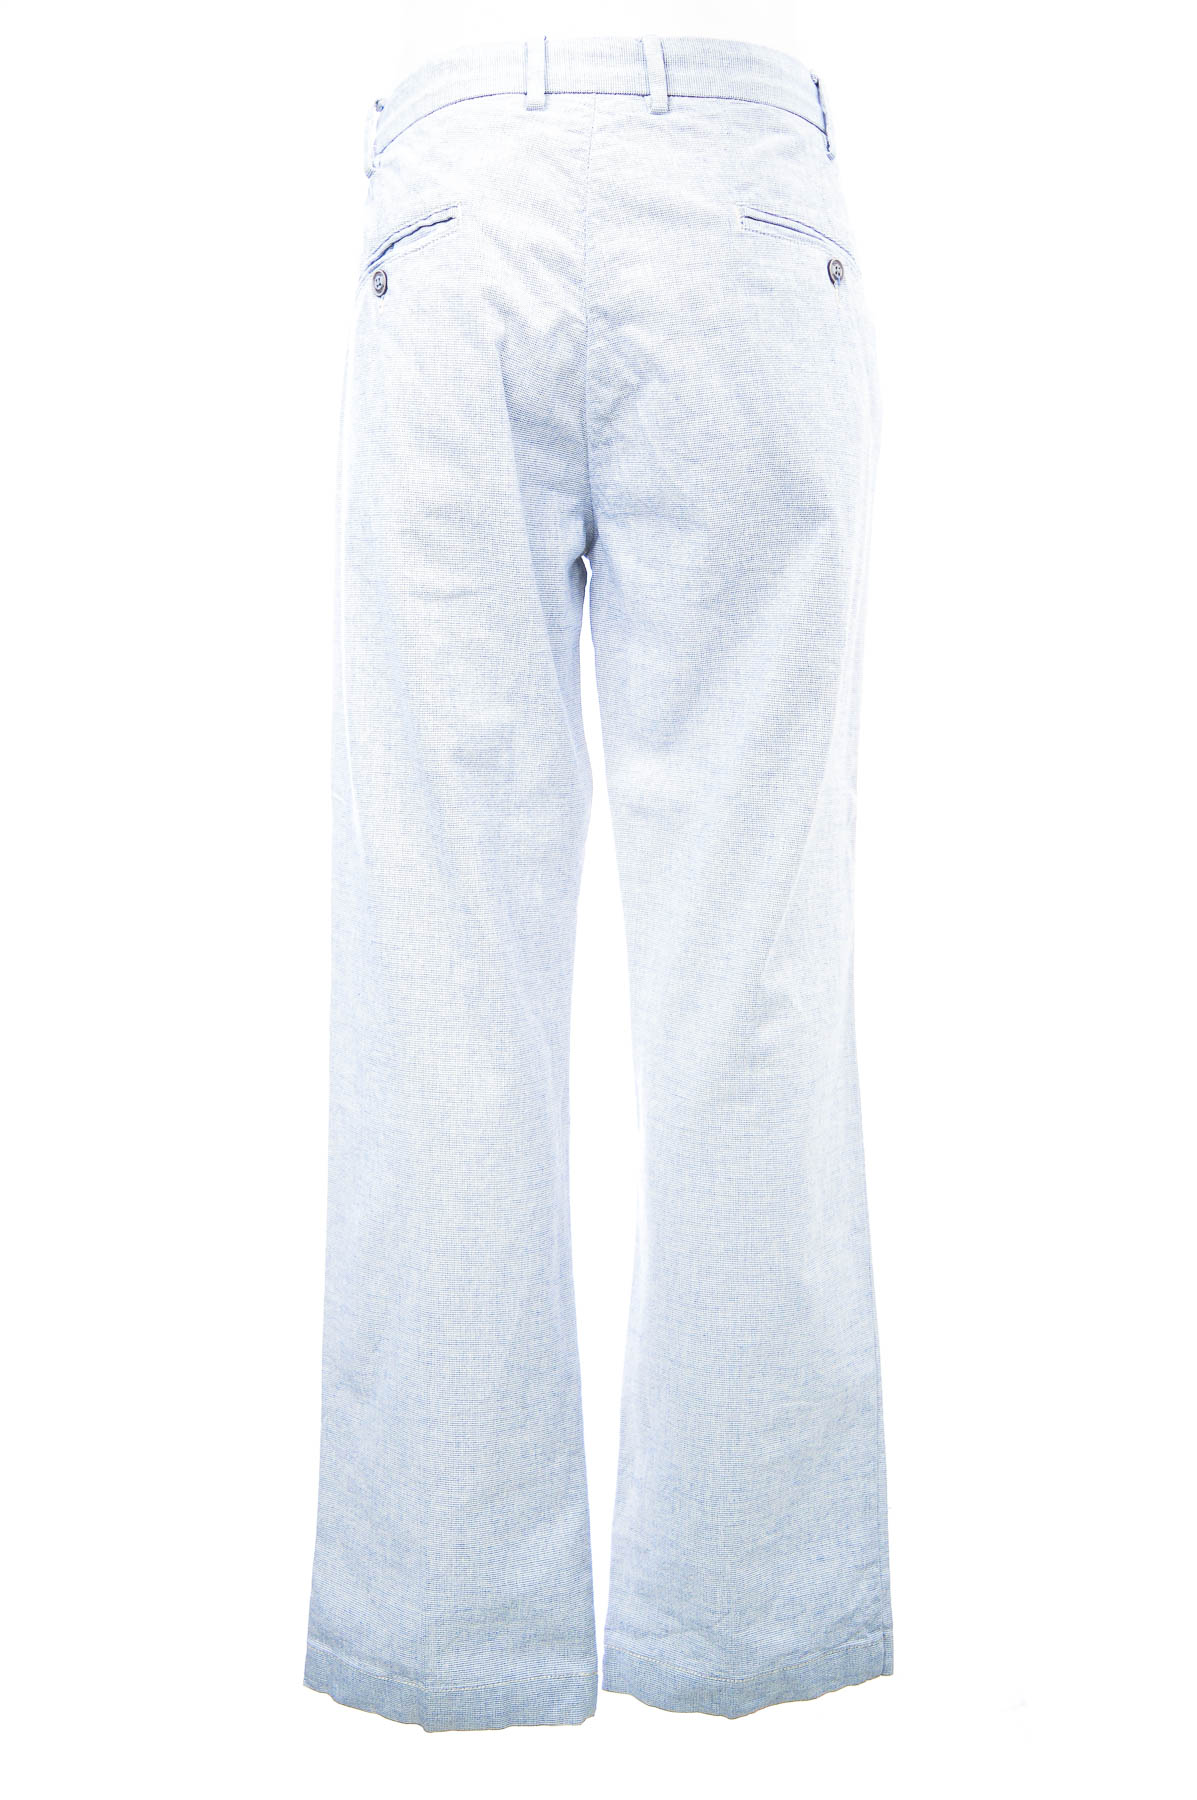 Pantalon pentru bărbați - Conbipel - 1